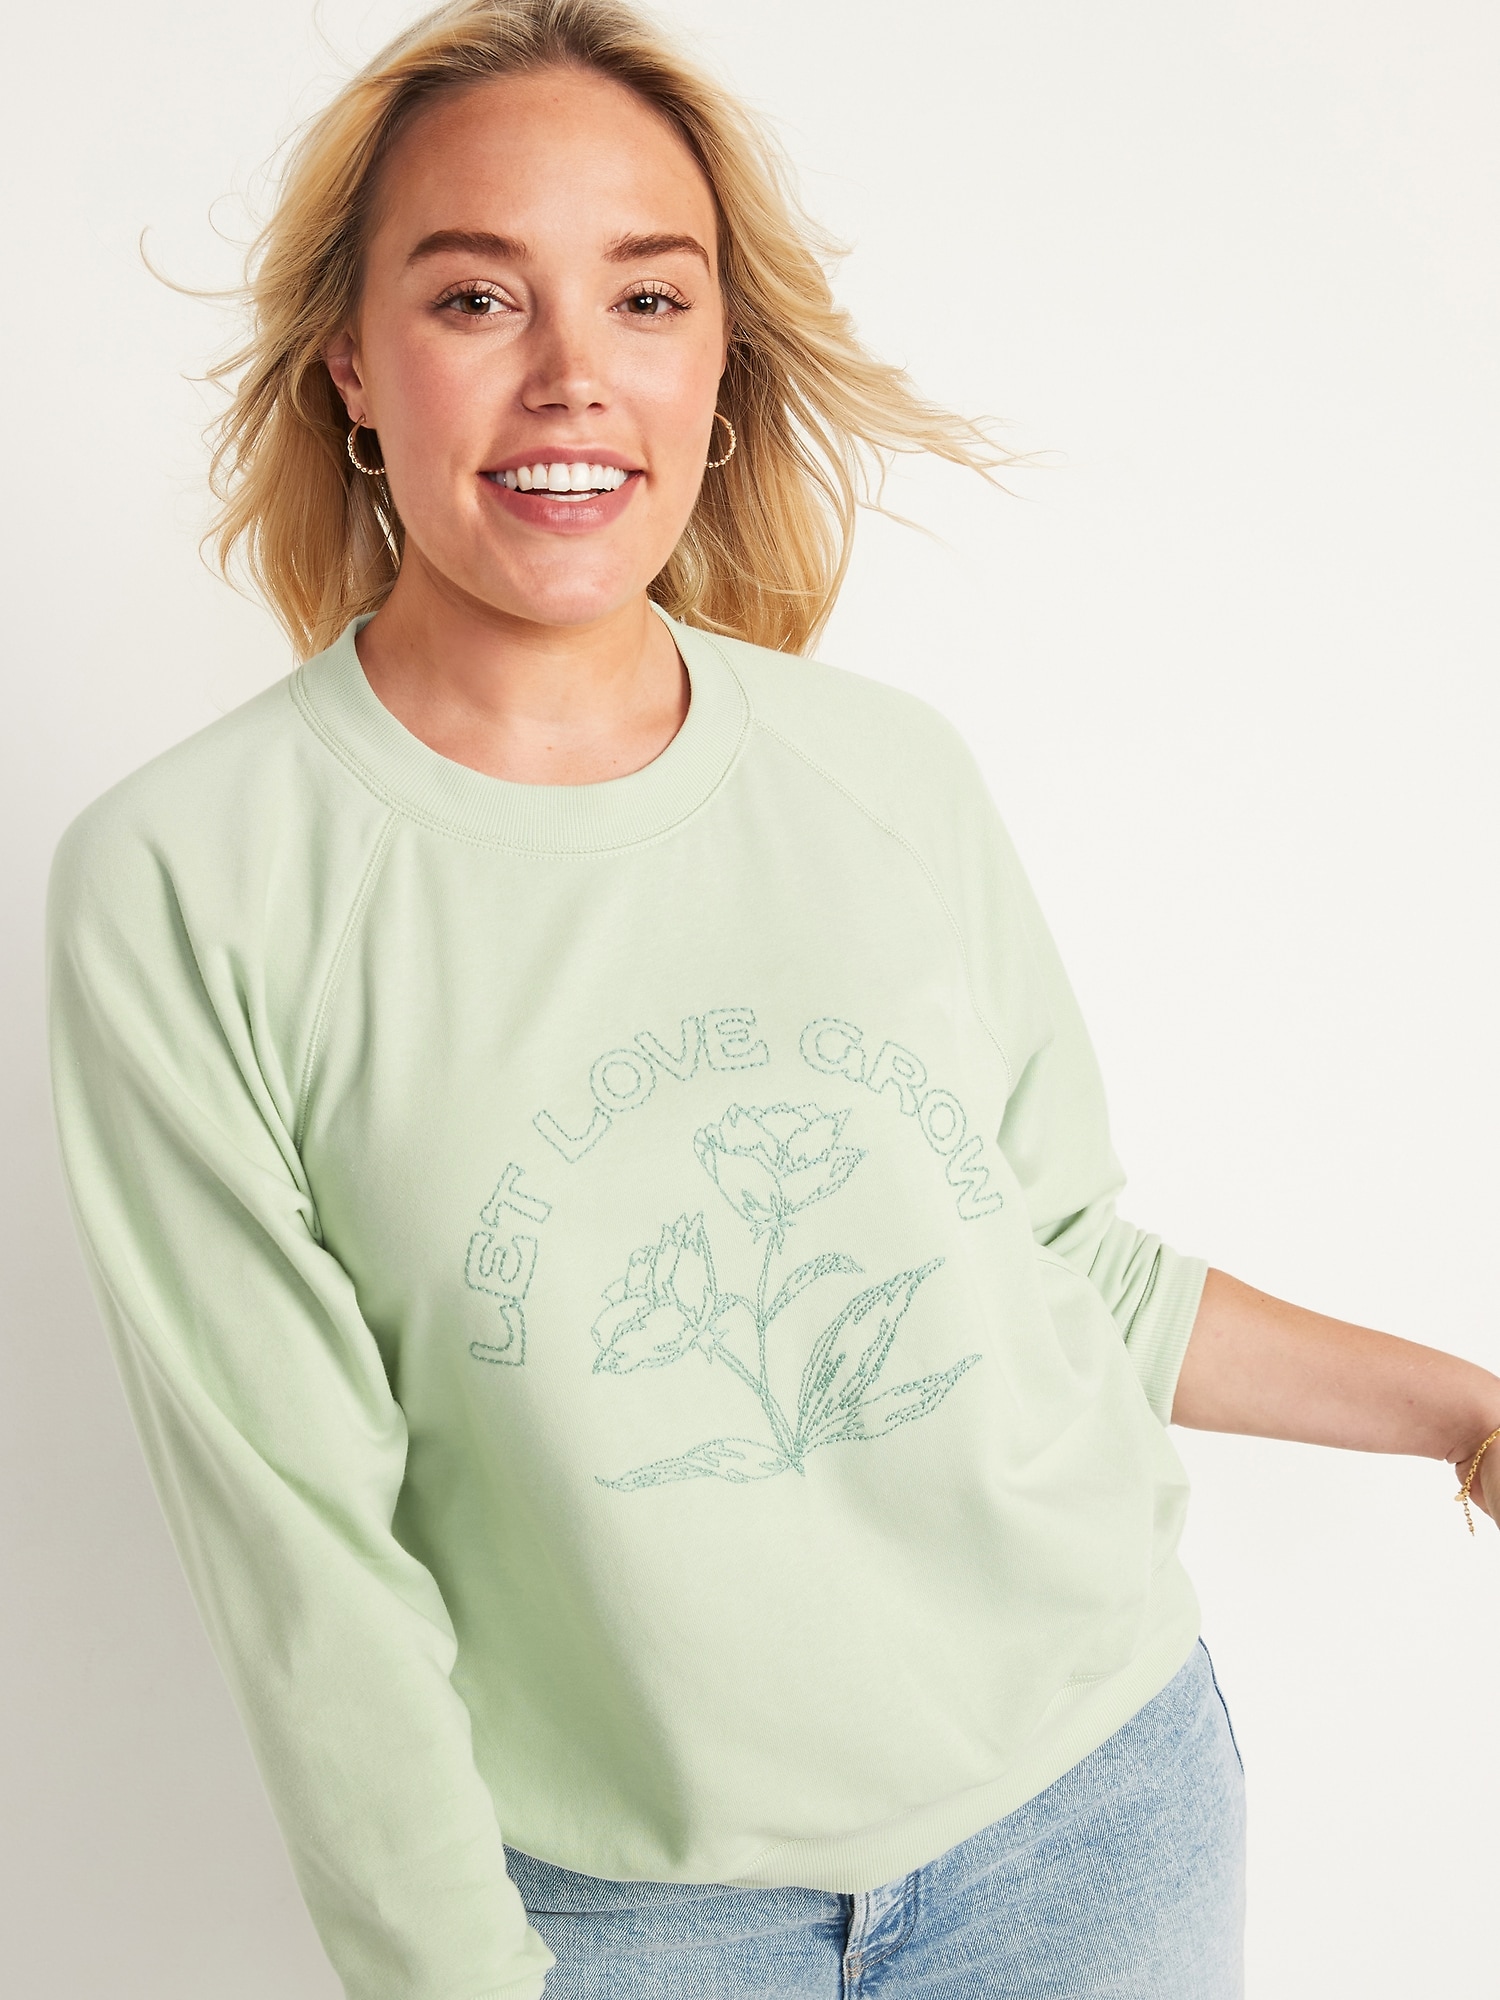 Vintage Crew-Neck Sweatshirt for Women